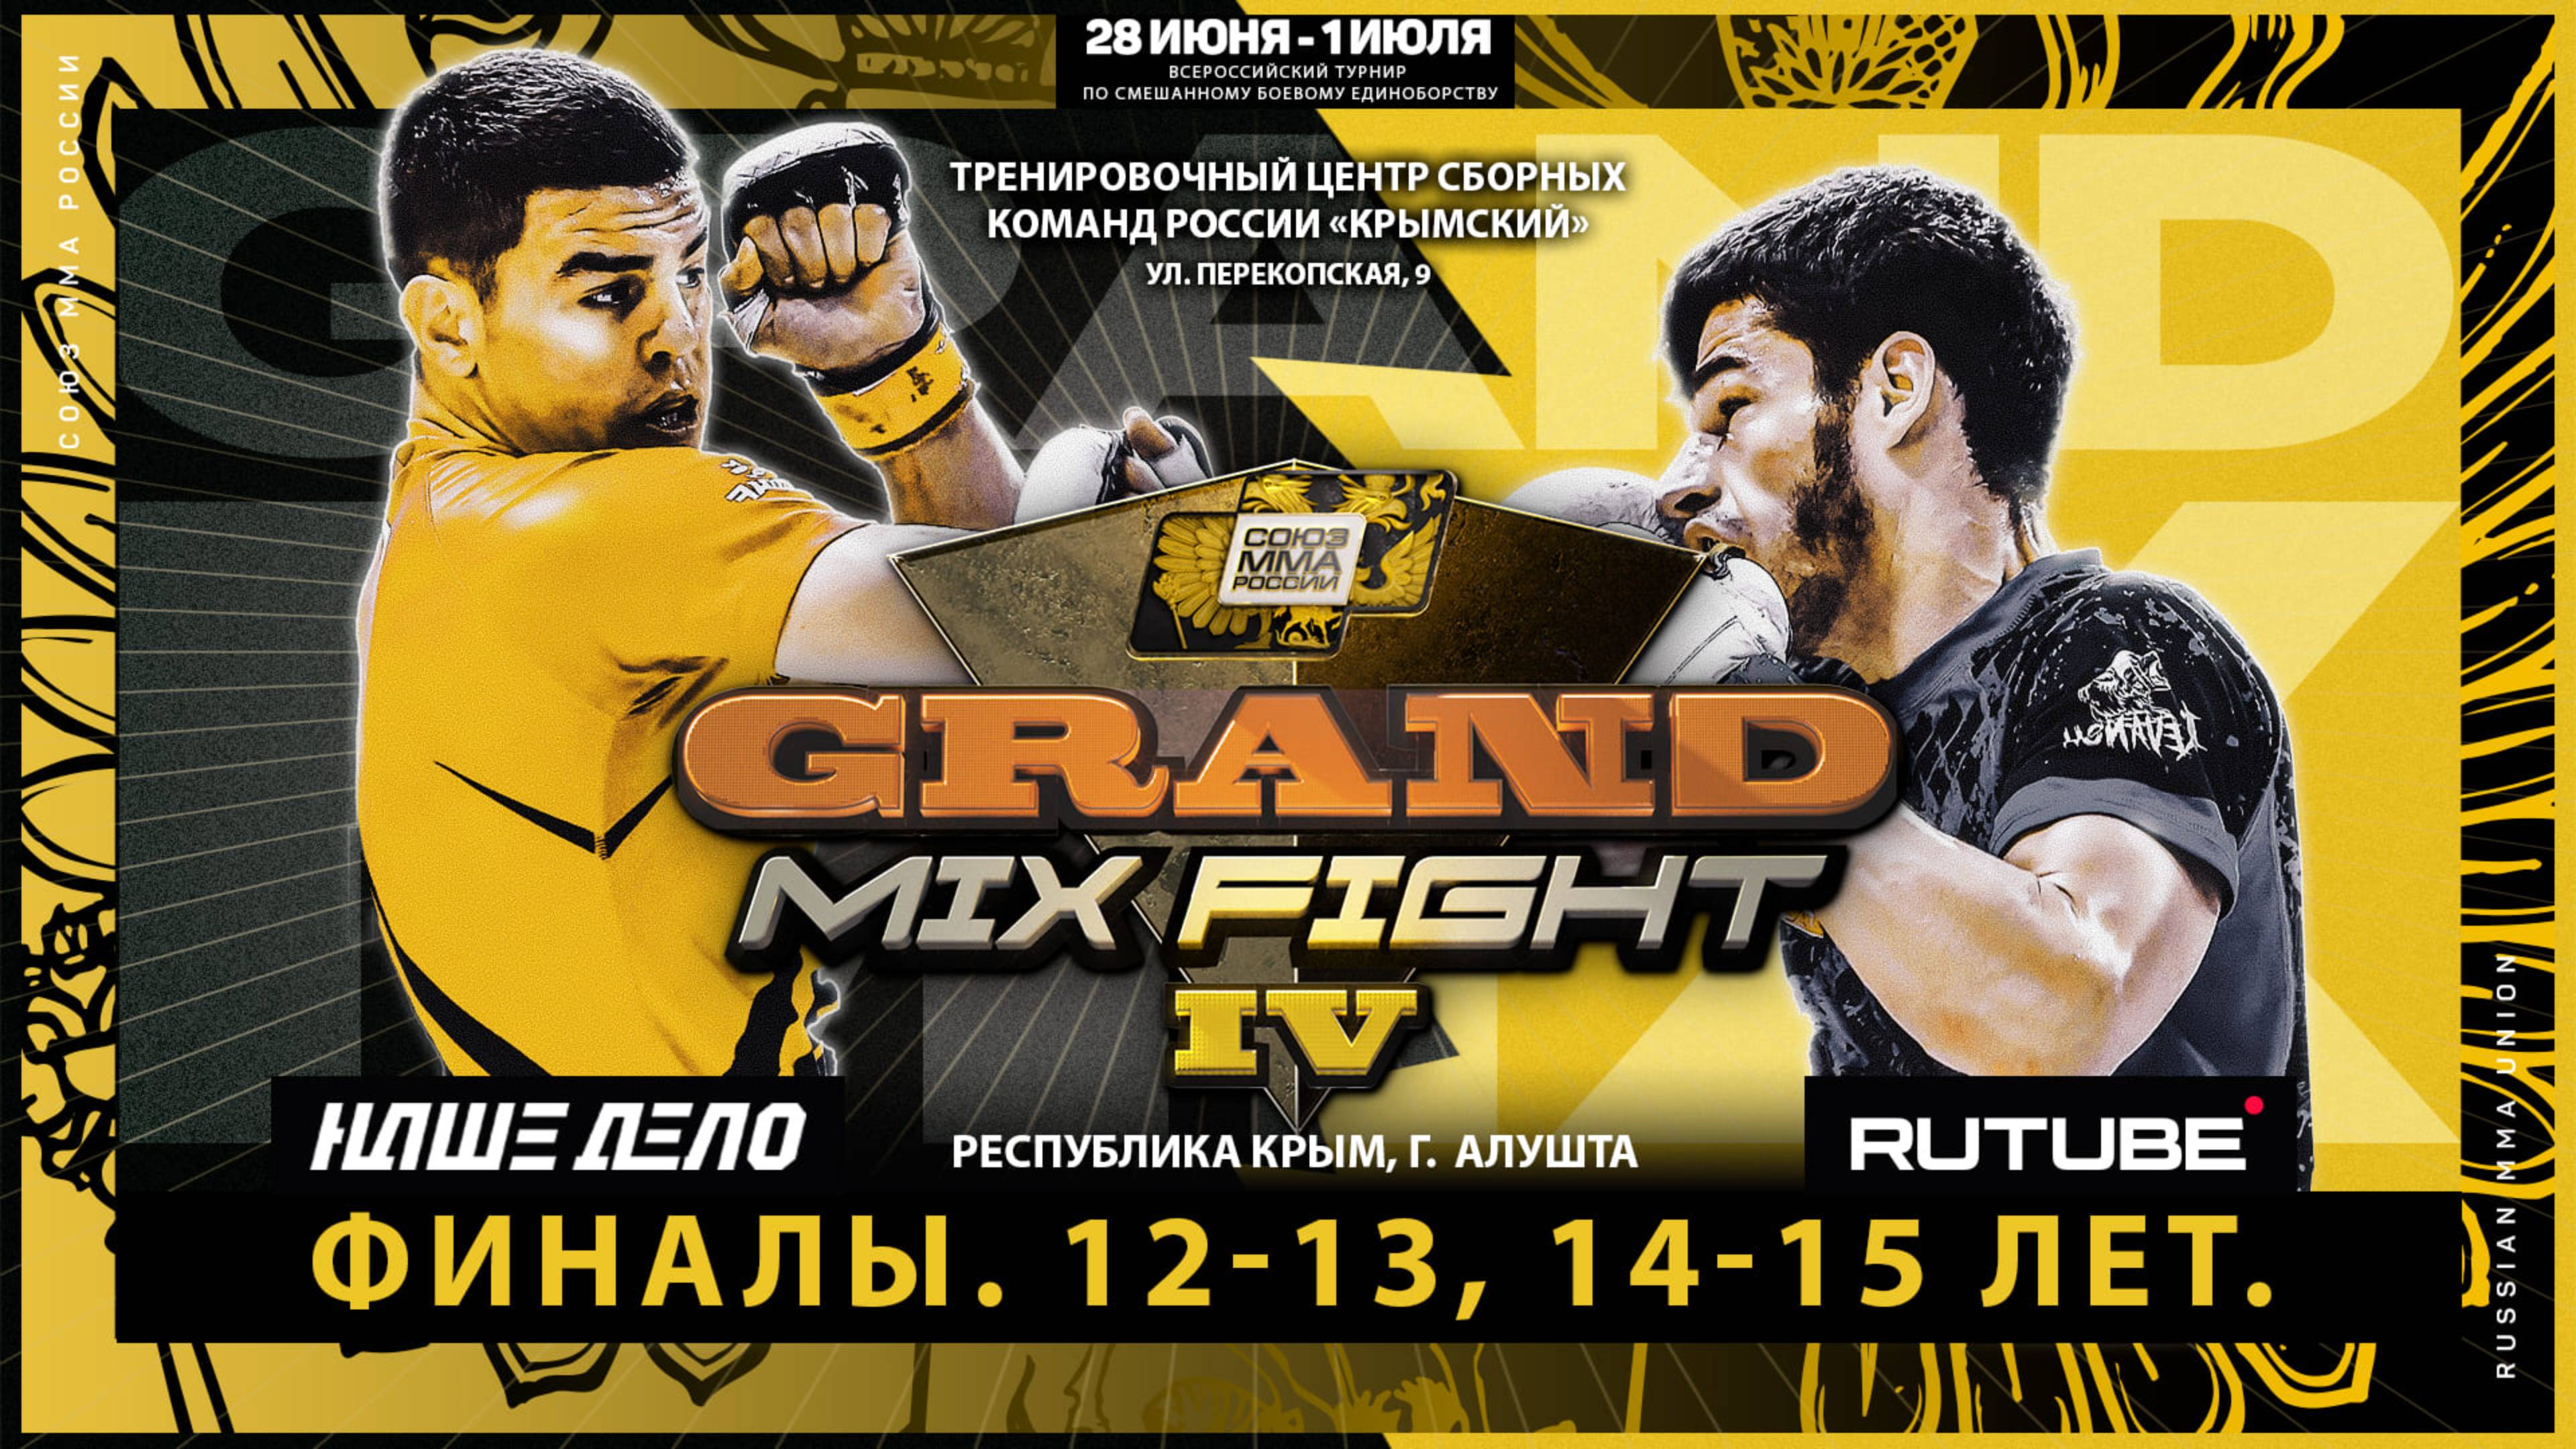 Всероссийский турнир Grand Mix Fight IV. Финалы. 12-13 и 14-15 лет